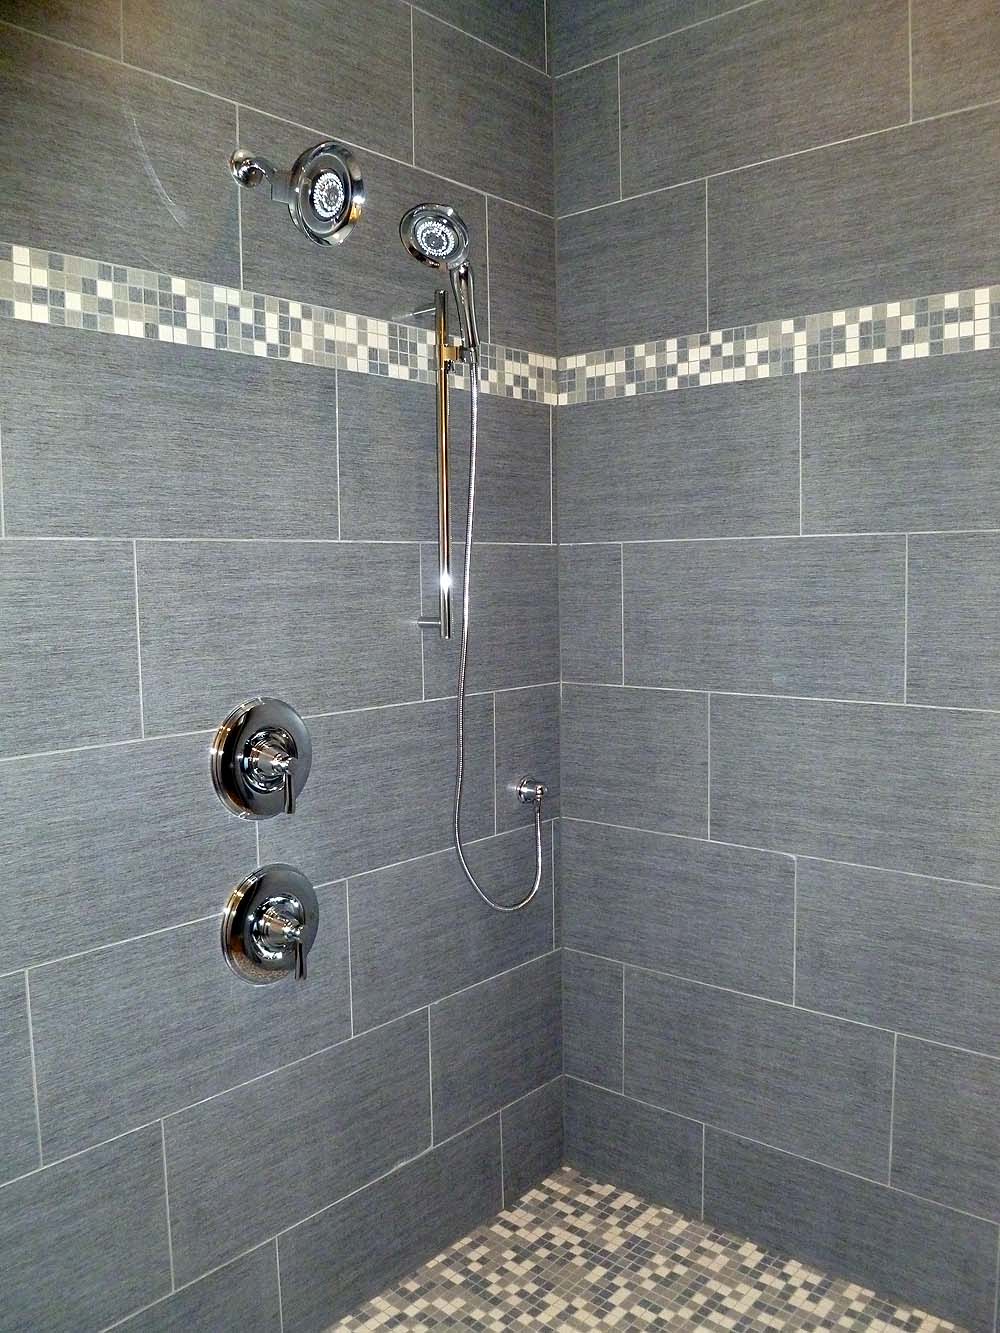 Tile walled master shower